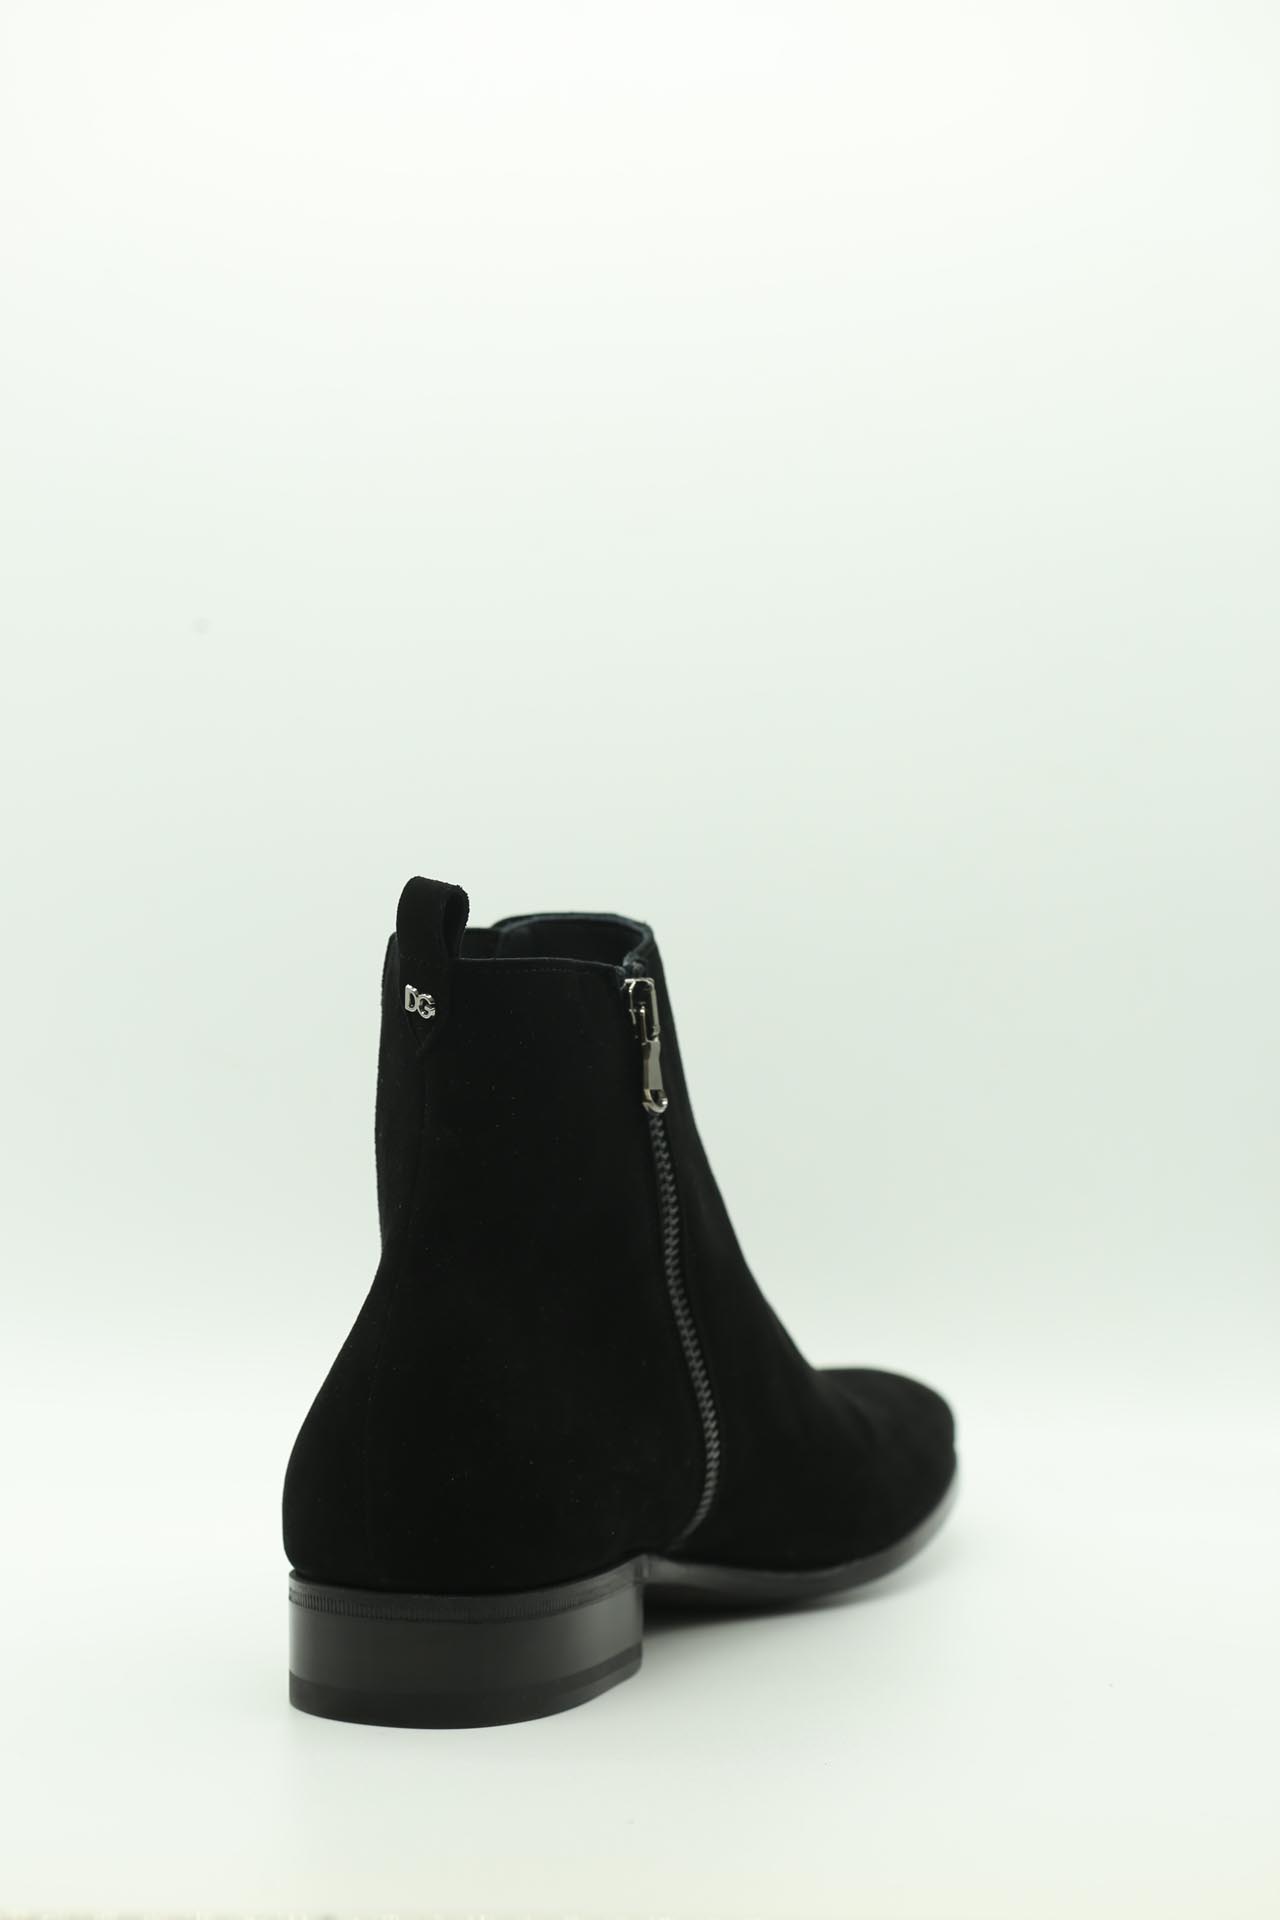 Dolce & Gabbana, Boots